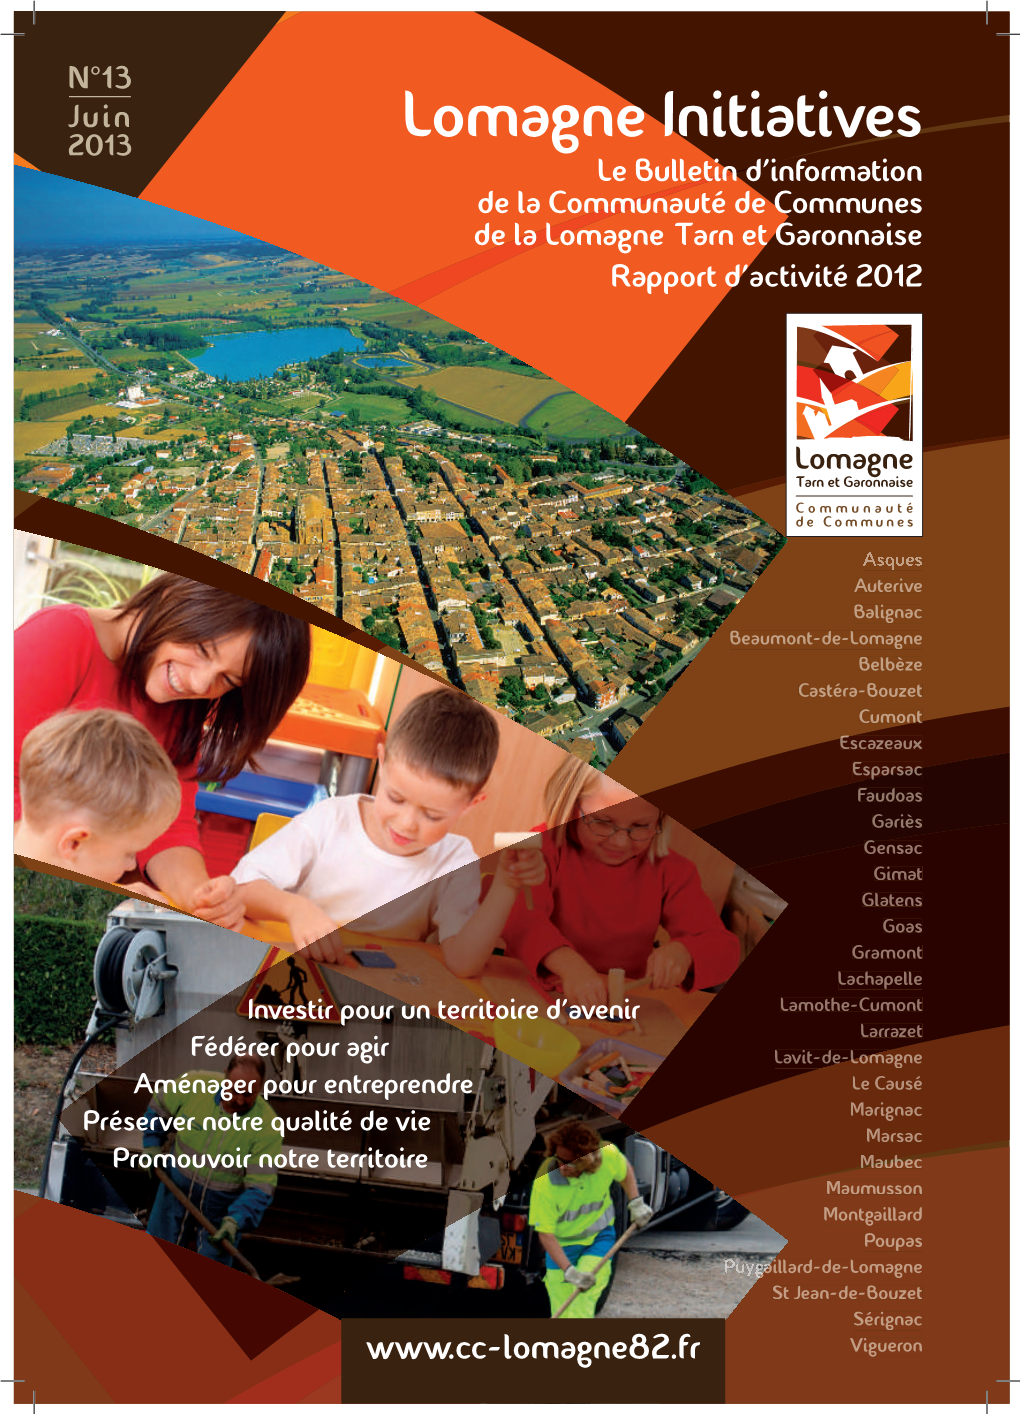 2013 Lomagne Initiatives Le Bulletin D’Information De La Communauté De Communes De La Lomagne Tarn Et Garonnaise Rapport D’Activité 2012